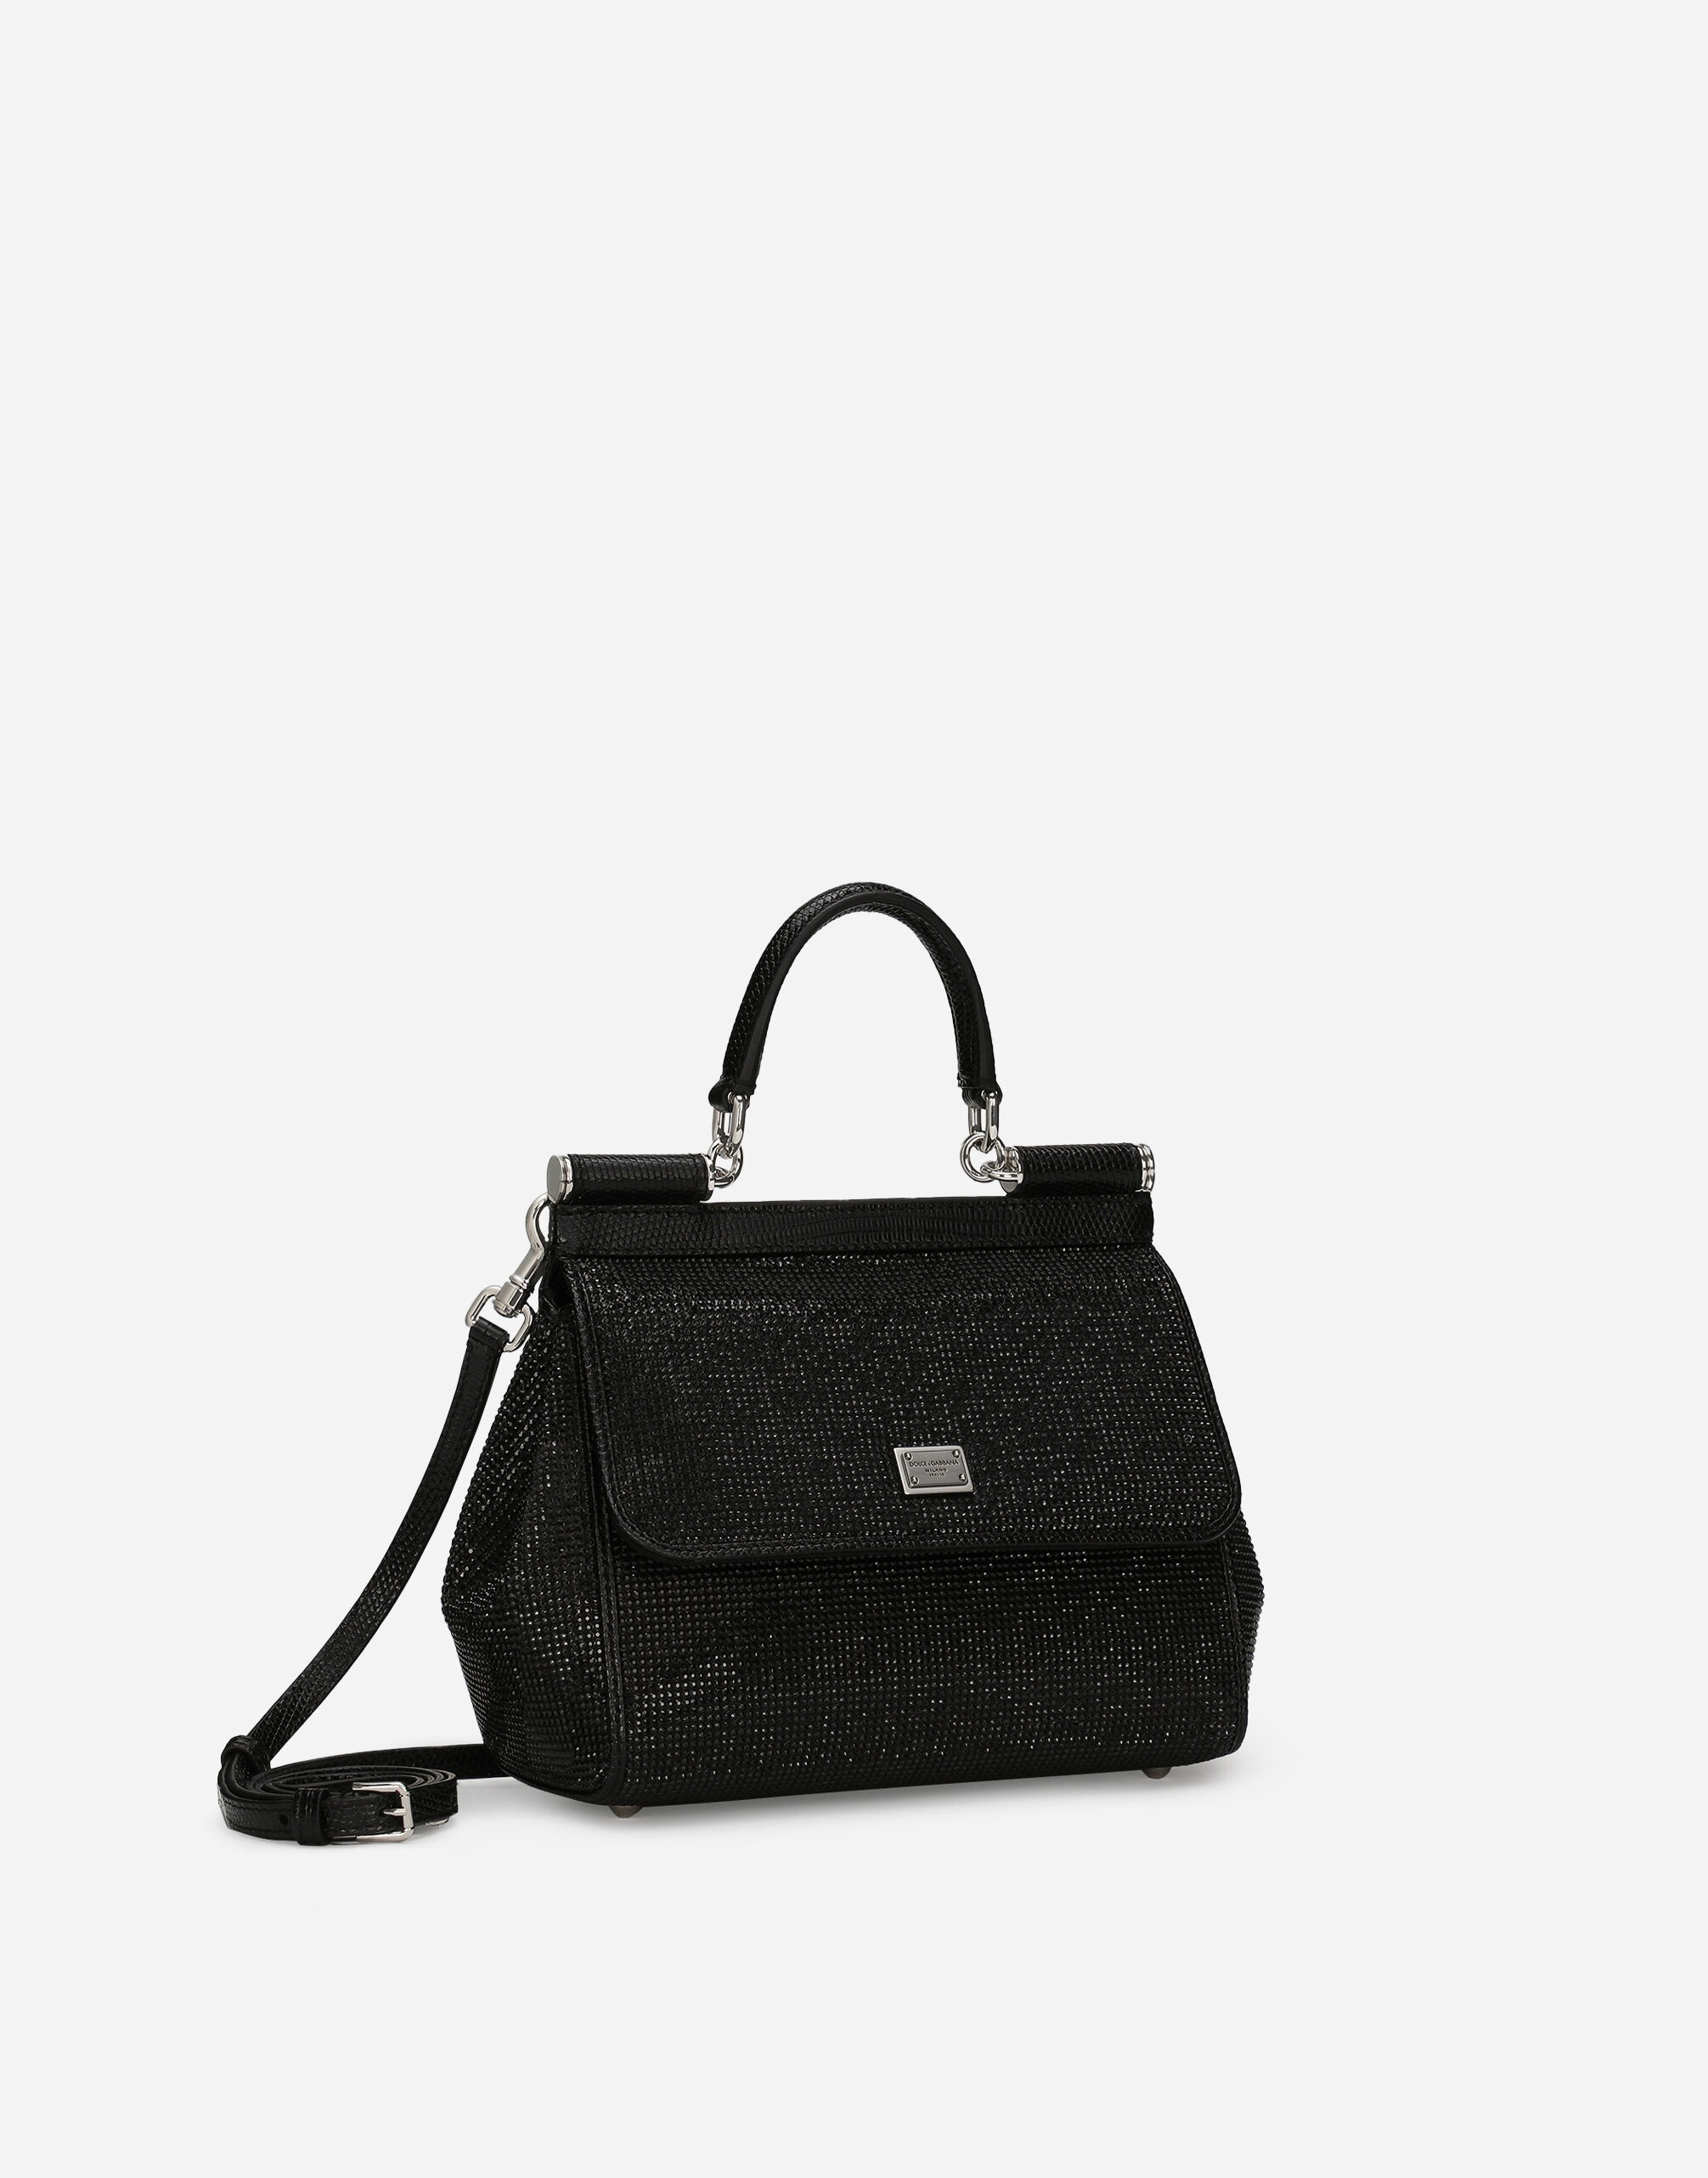 Medium Sicily handbag - 3